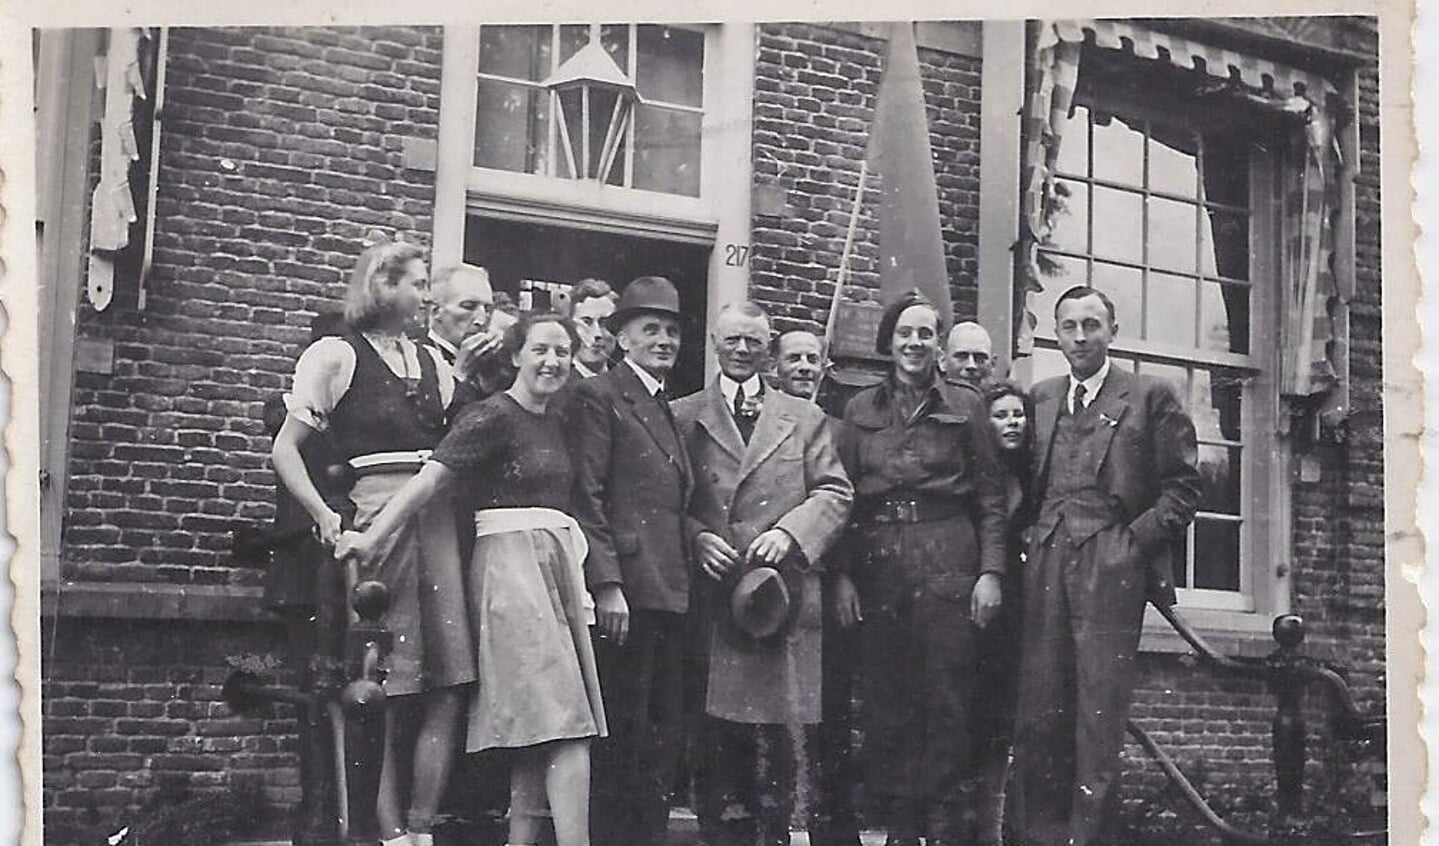 Kort na de bevrijding voor het Maartensdijkse gemeentehuis met o.a. waarnemend burgemeester Udo (hoed in de hand). (foto uit de collectie van Koos Kolenbrander)